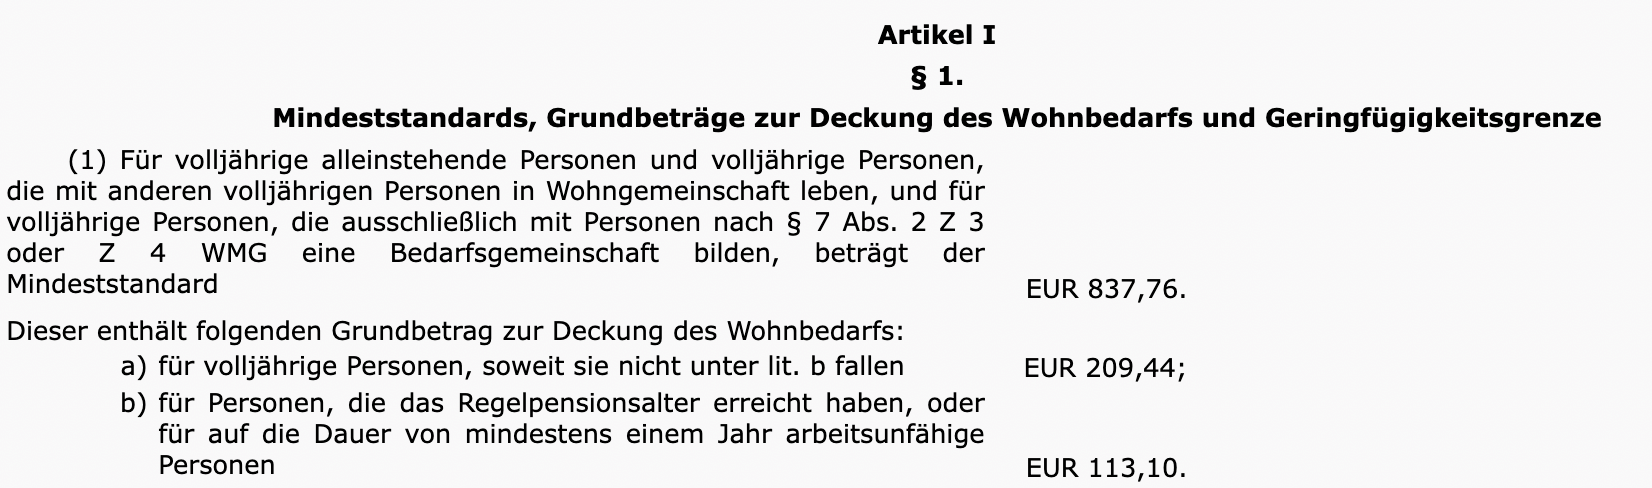 uszug aus der Verordnung für die Wiener-Mindeststandardversorgung aus dem Jahr 2016